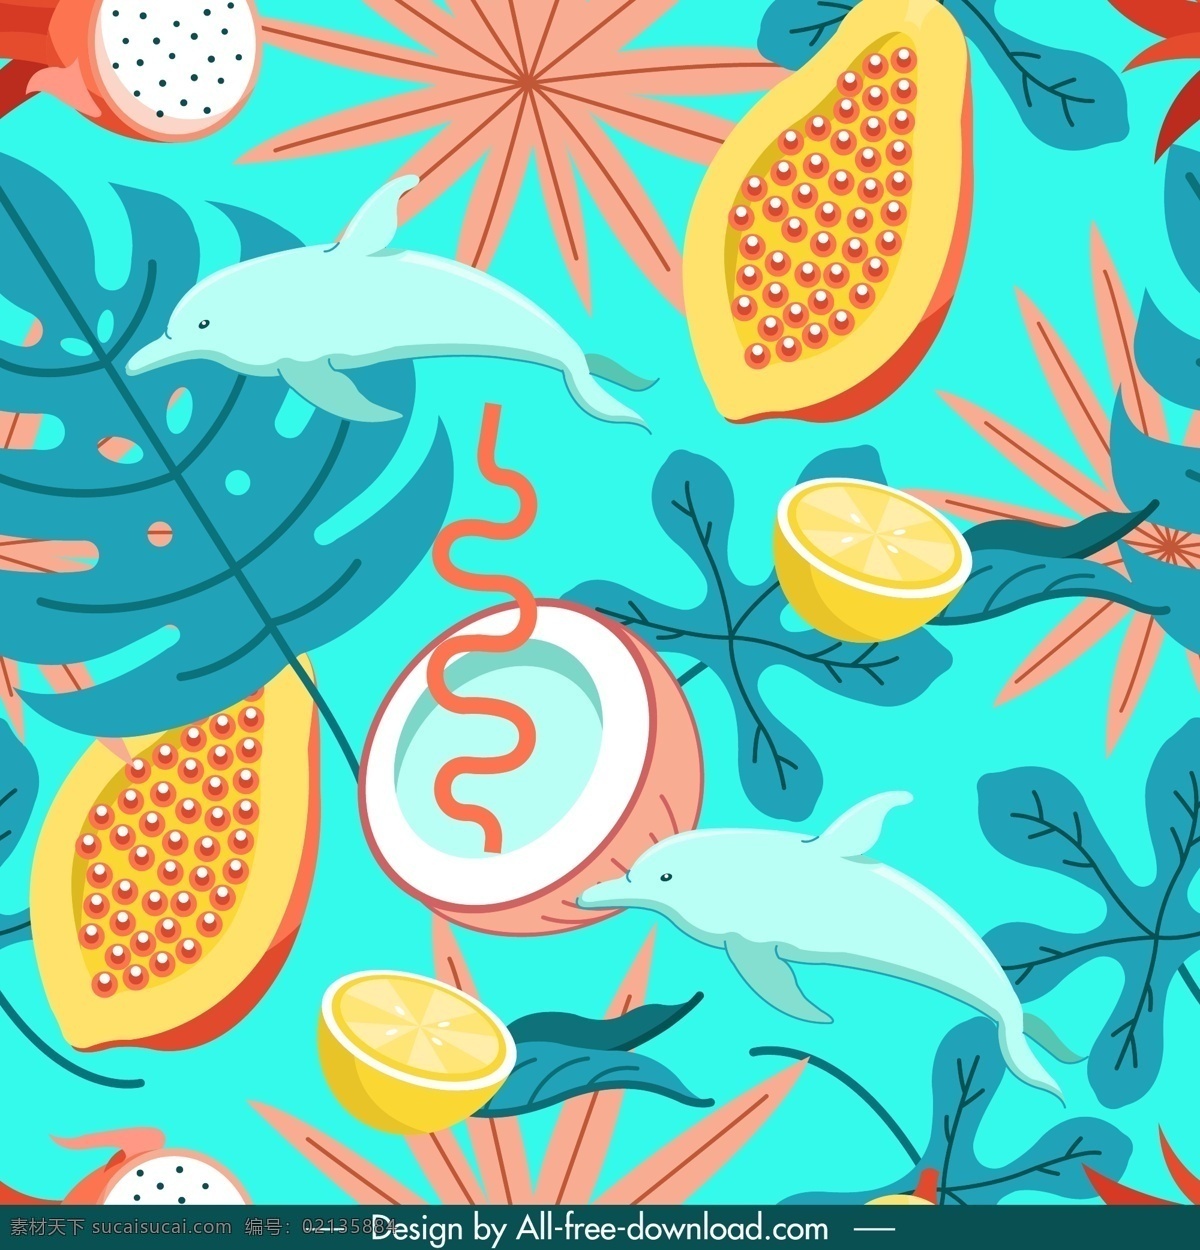 彩色热带水果 海豚无缝背景 火龙果 木瓜 椰子 龟背竹叶 柠檬 树叶 彩色 热带 水果 海豚 无缝背景 矢量图 ai格式 背景